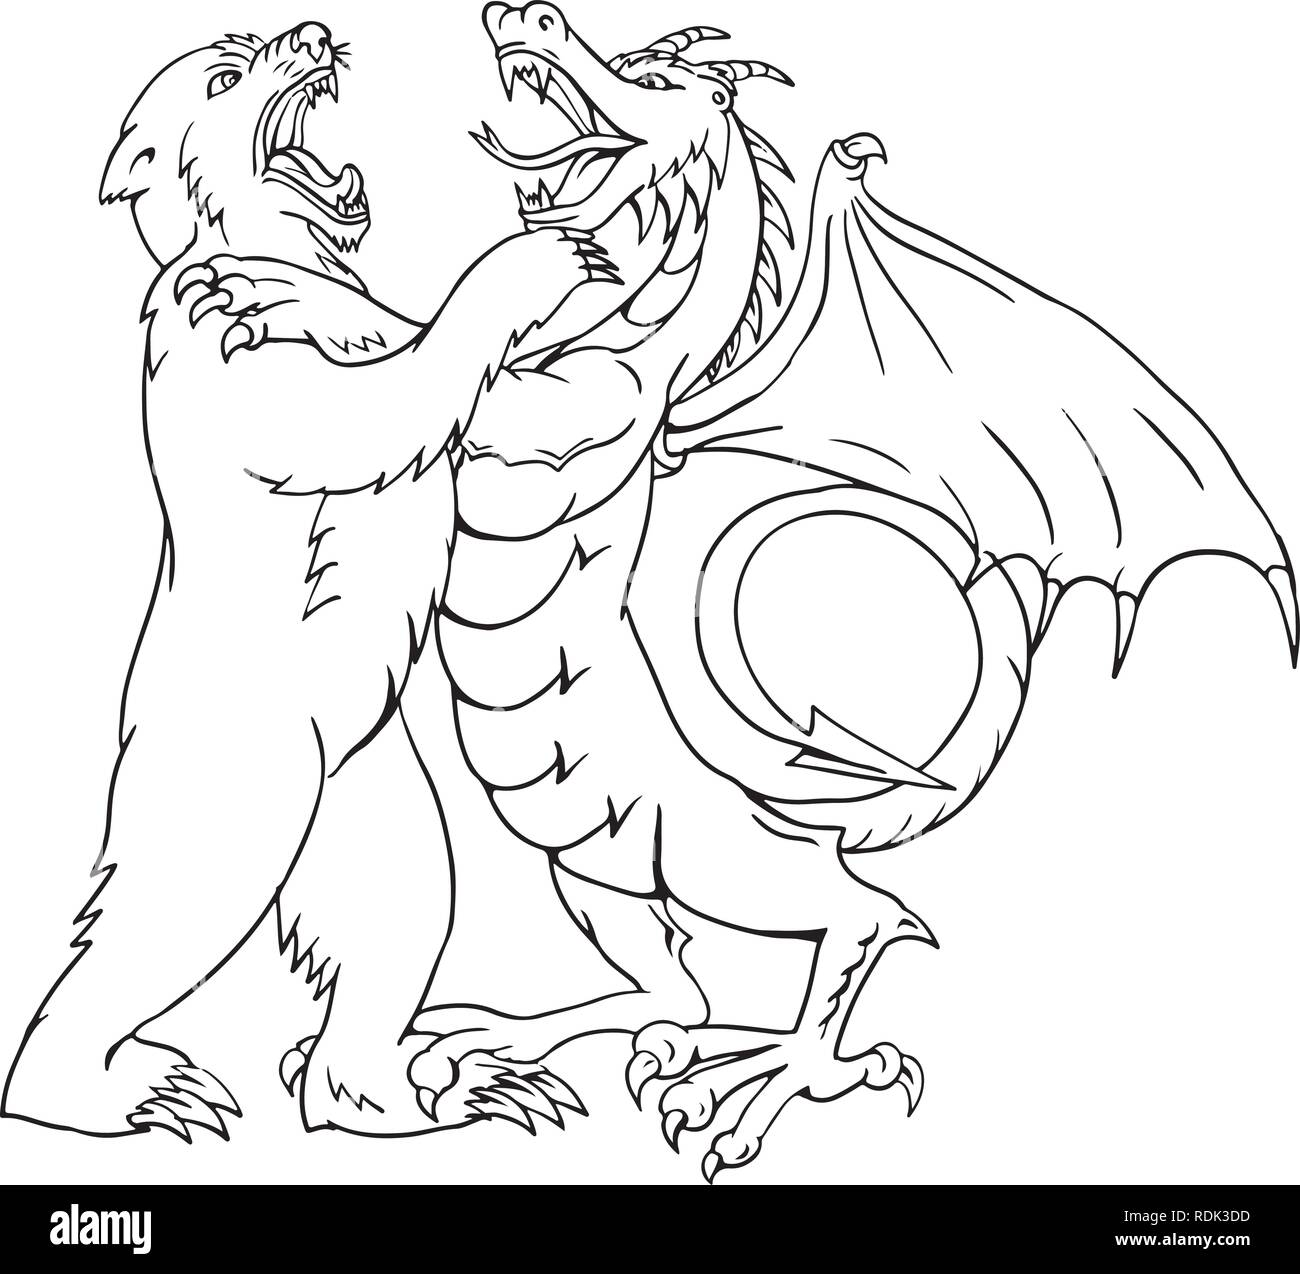 Schizzo di disegno illustrazione dello stile di un orso wrestling, giostre, sparring o combattendo contro un drago cinese isolato su sfondo bianco fatto in bianco e nero e Illustrazione Vettoriale